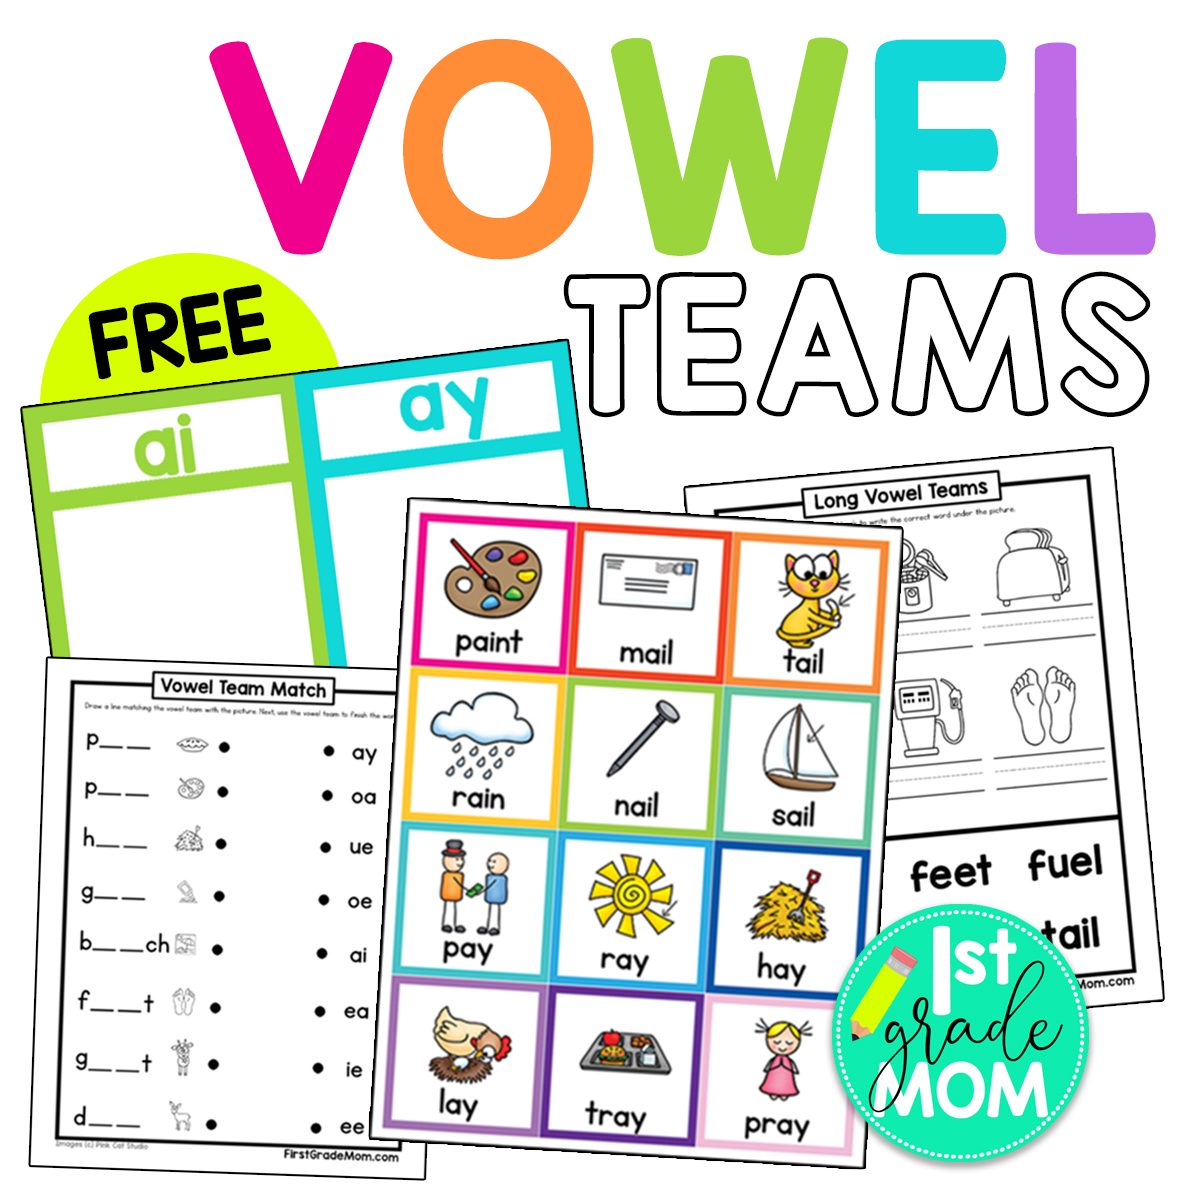 Vowel Team Worksheet Printable Word Searches